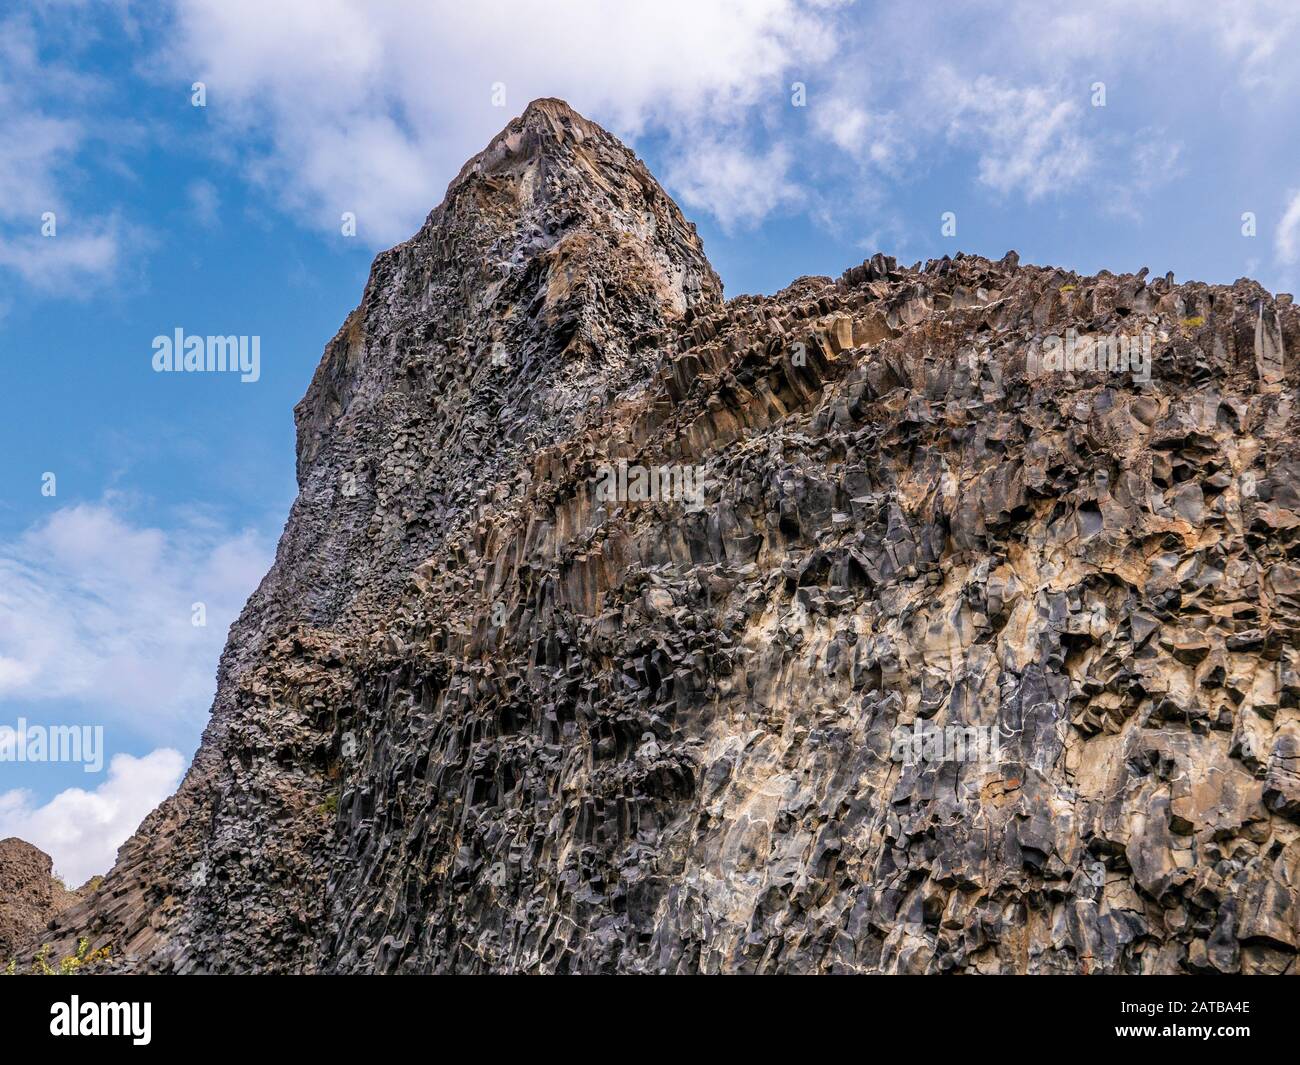 Die Felswände Hljóðaklettar im Herzen Islands.Eins der größten Naturwunder der Insel. Auch Echofelsen genannt, weil man manchmal Wasser rauschen hört. Foto de stock